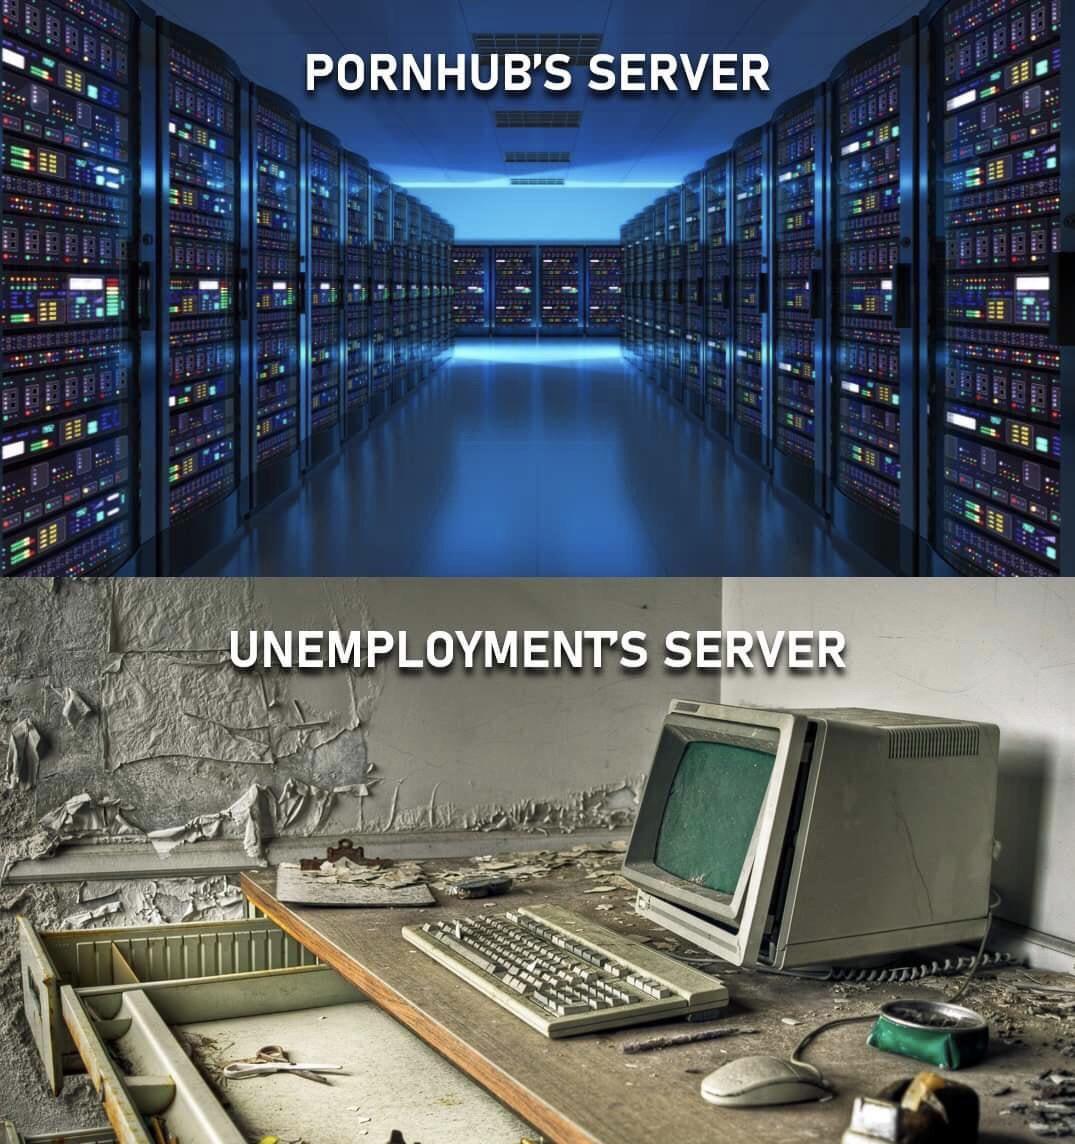 abandoned police station - Pornhub'S Server 1011 1 med Unemployments Server